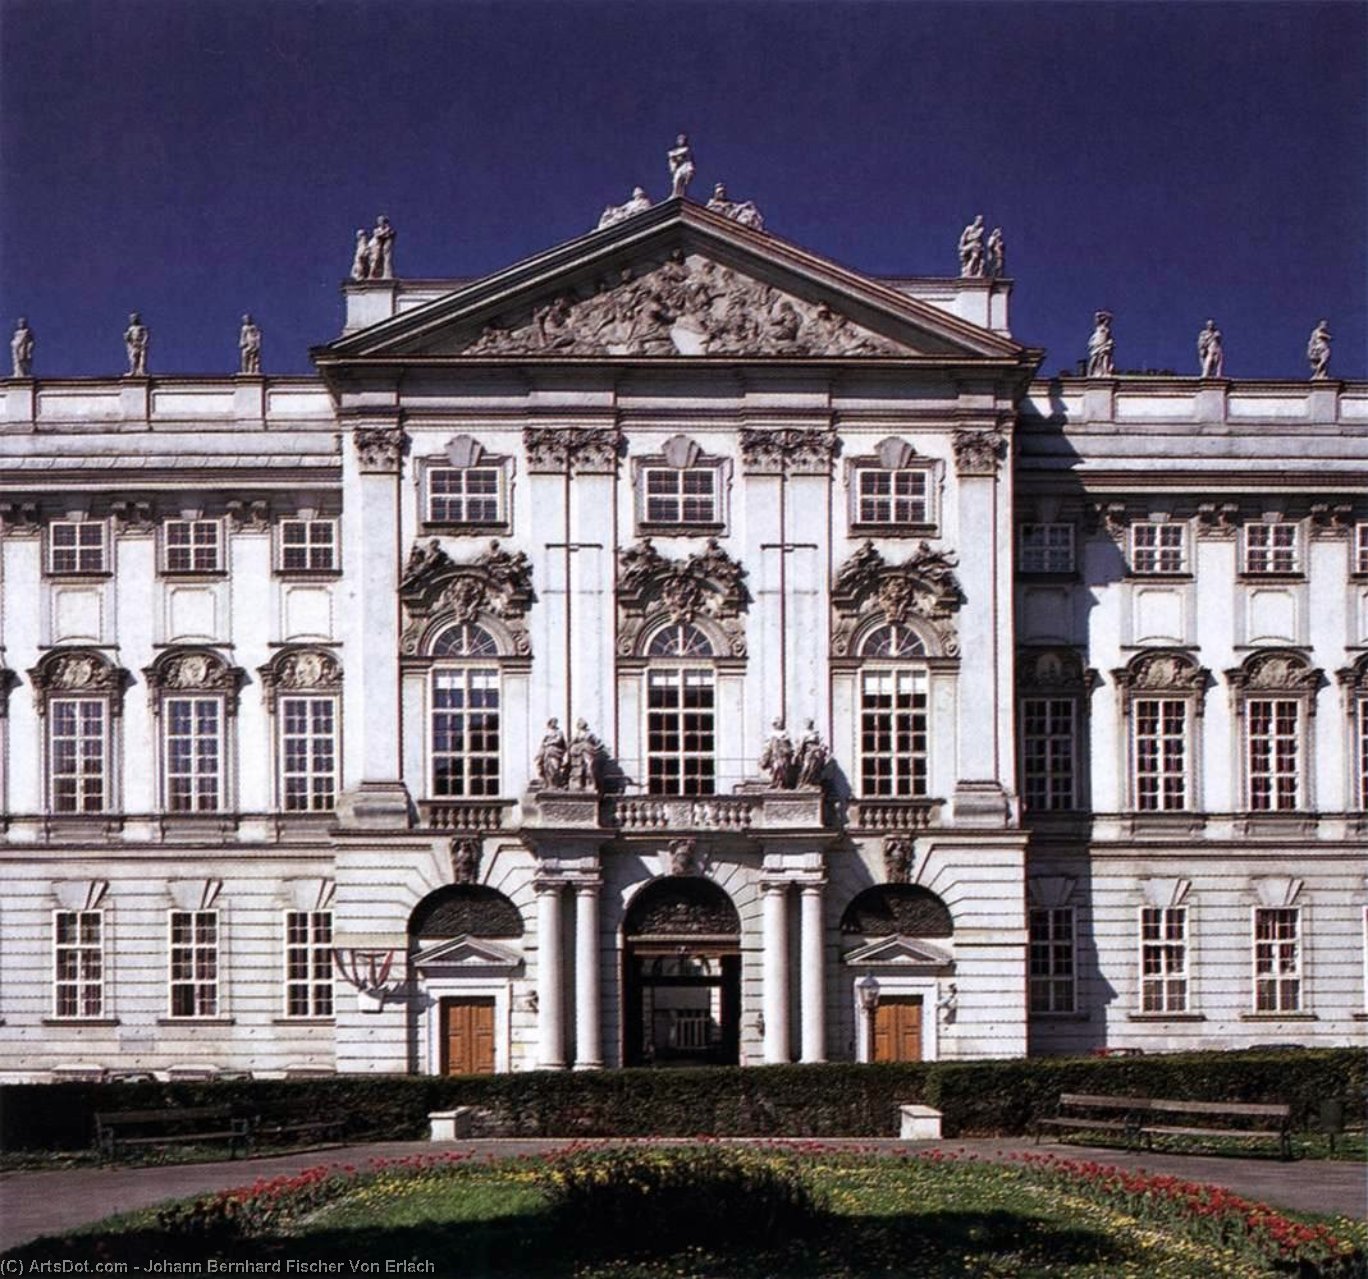 Стиль барокко в архитектуре 18 века в россии